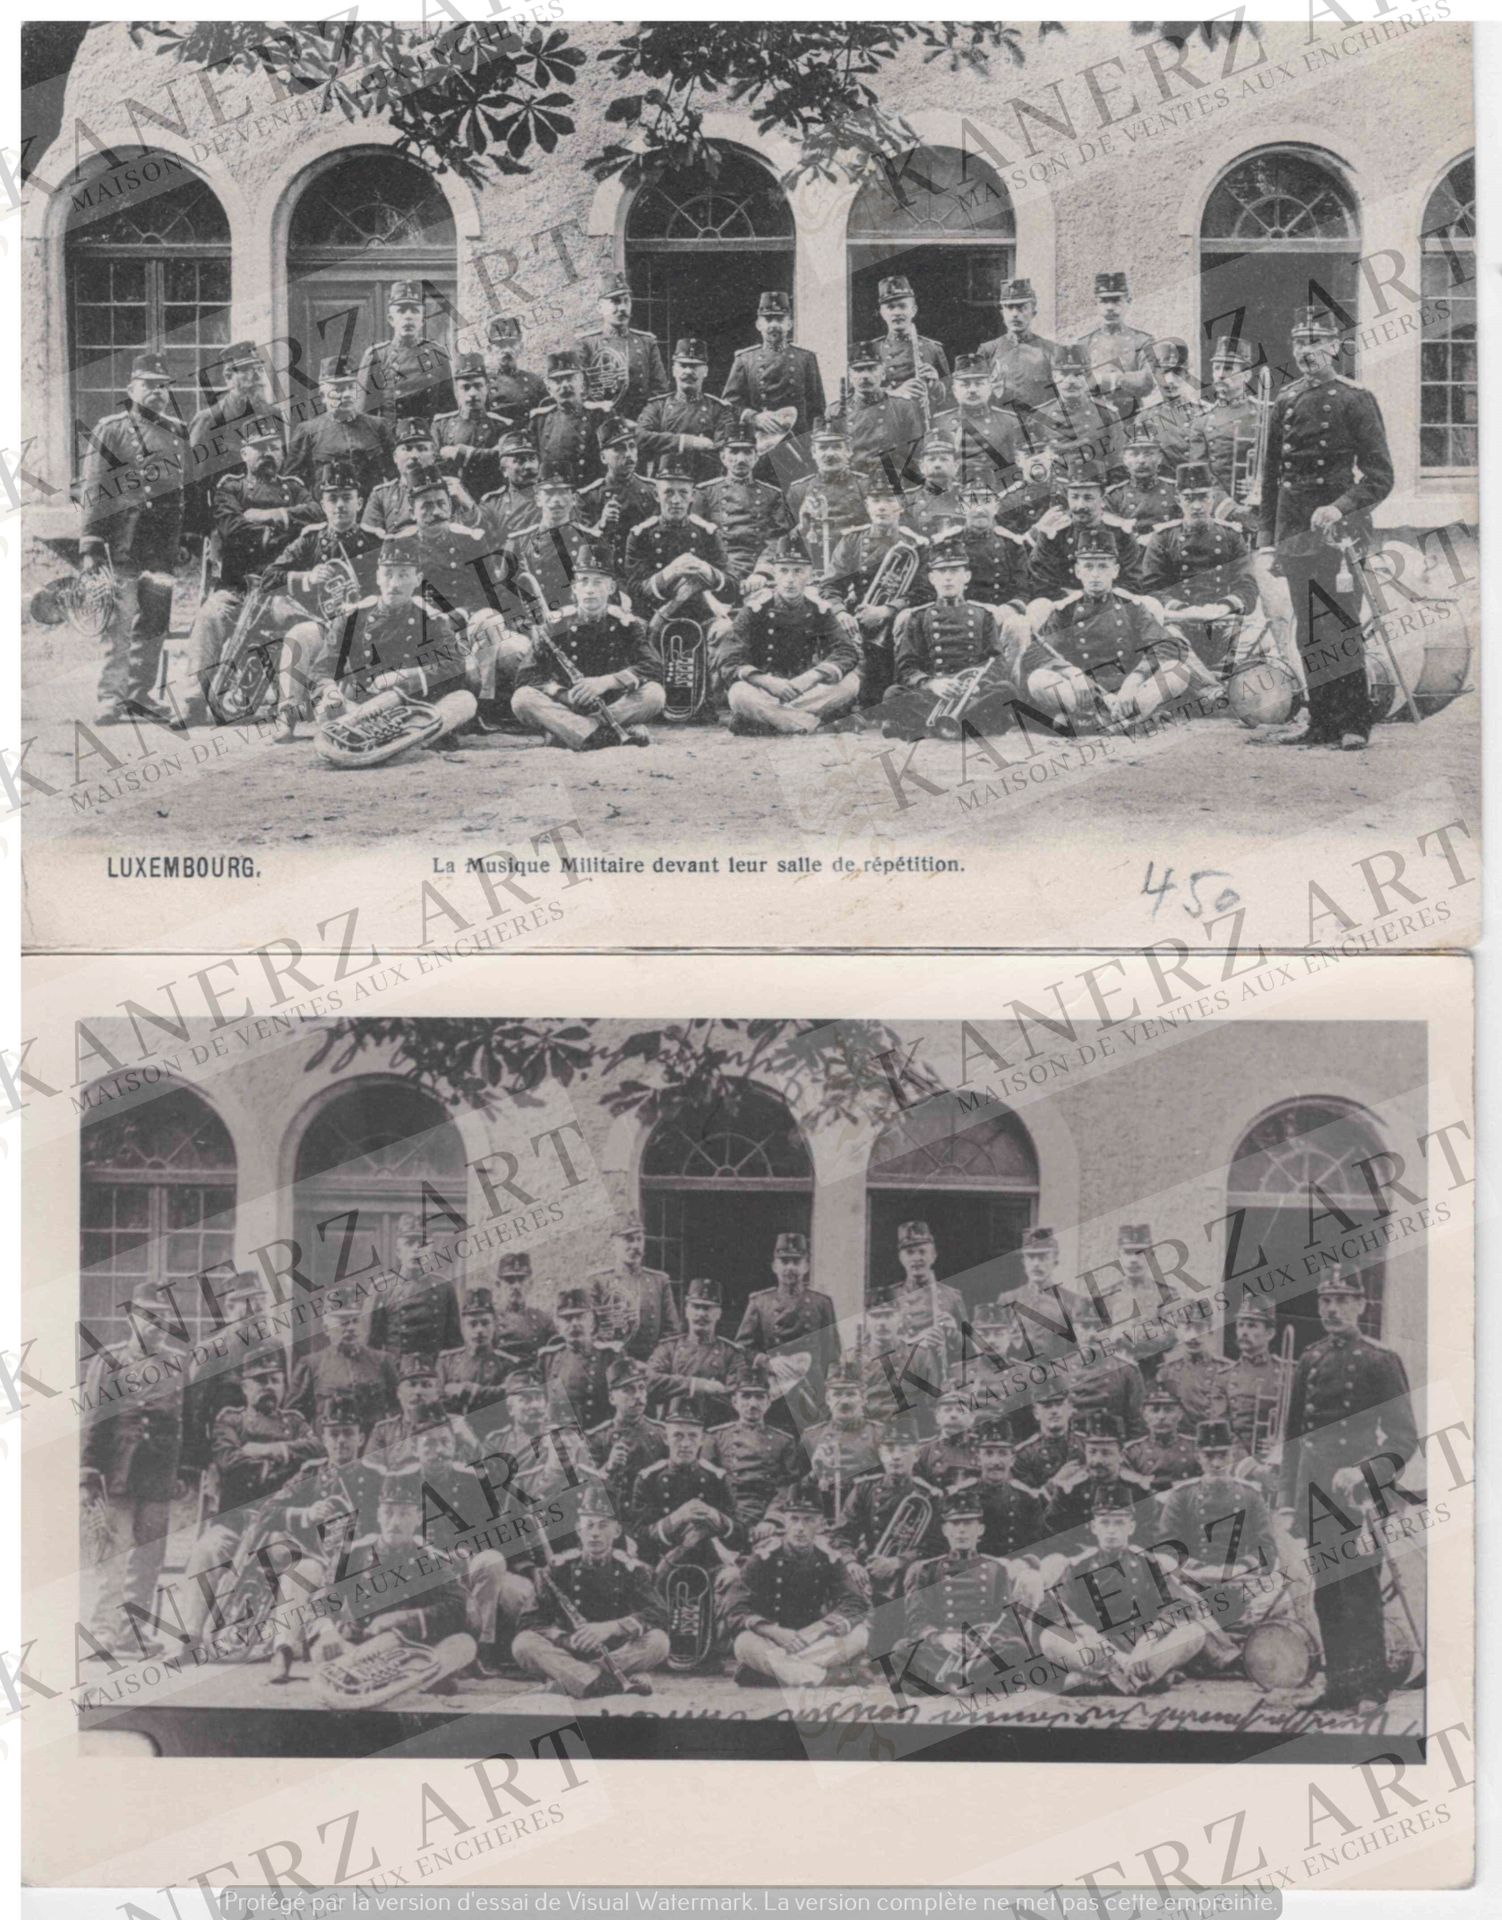 Null (WAR I) 2张关于军乐队的卡片：1.军乐队在他们的排练厅前，约1905年，2.同一张卡片是后来重新发行的，背面有人物的标识